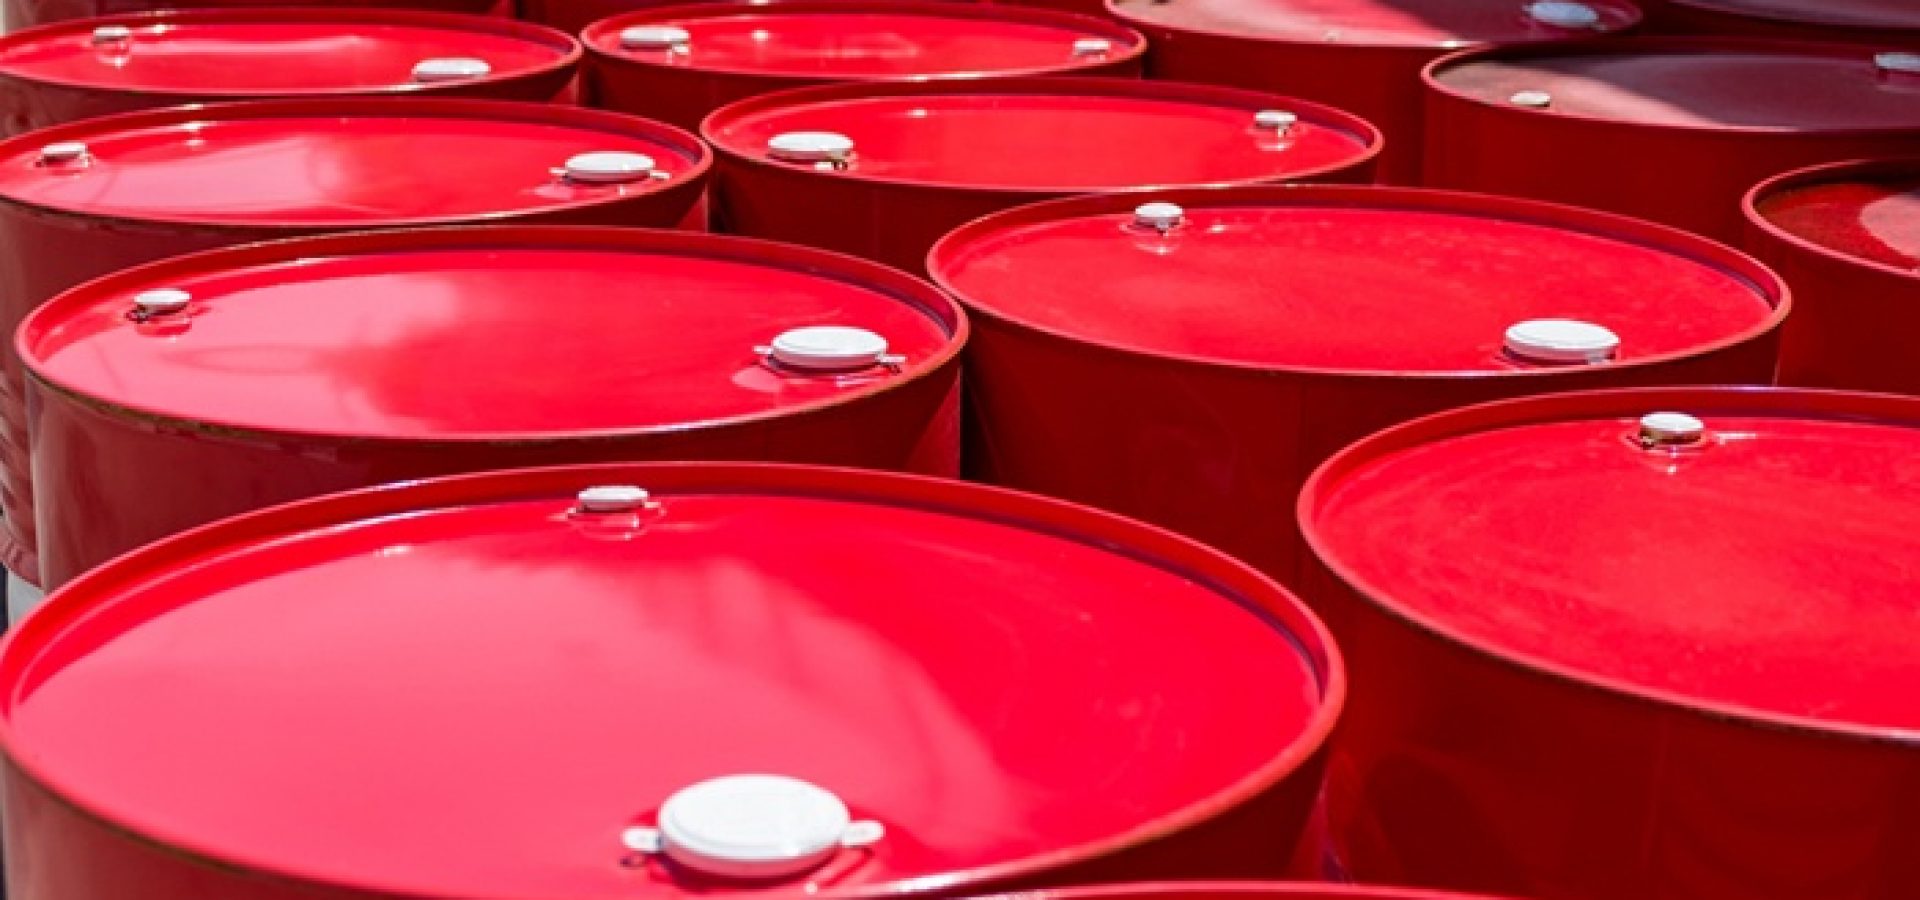 Wibest – Petroleum and oil: Crude oil barrels.